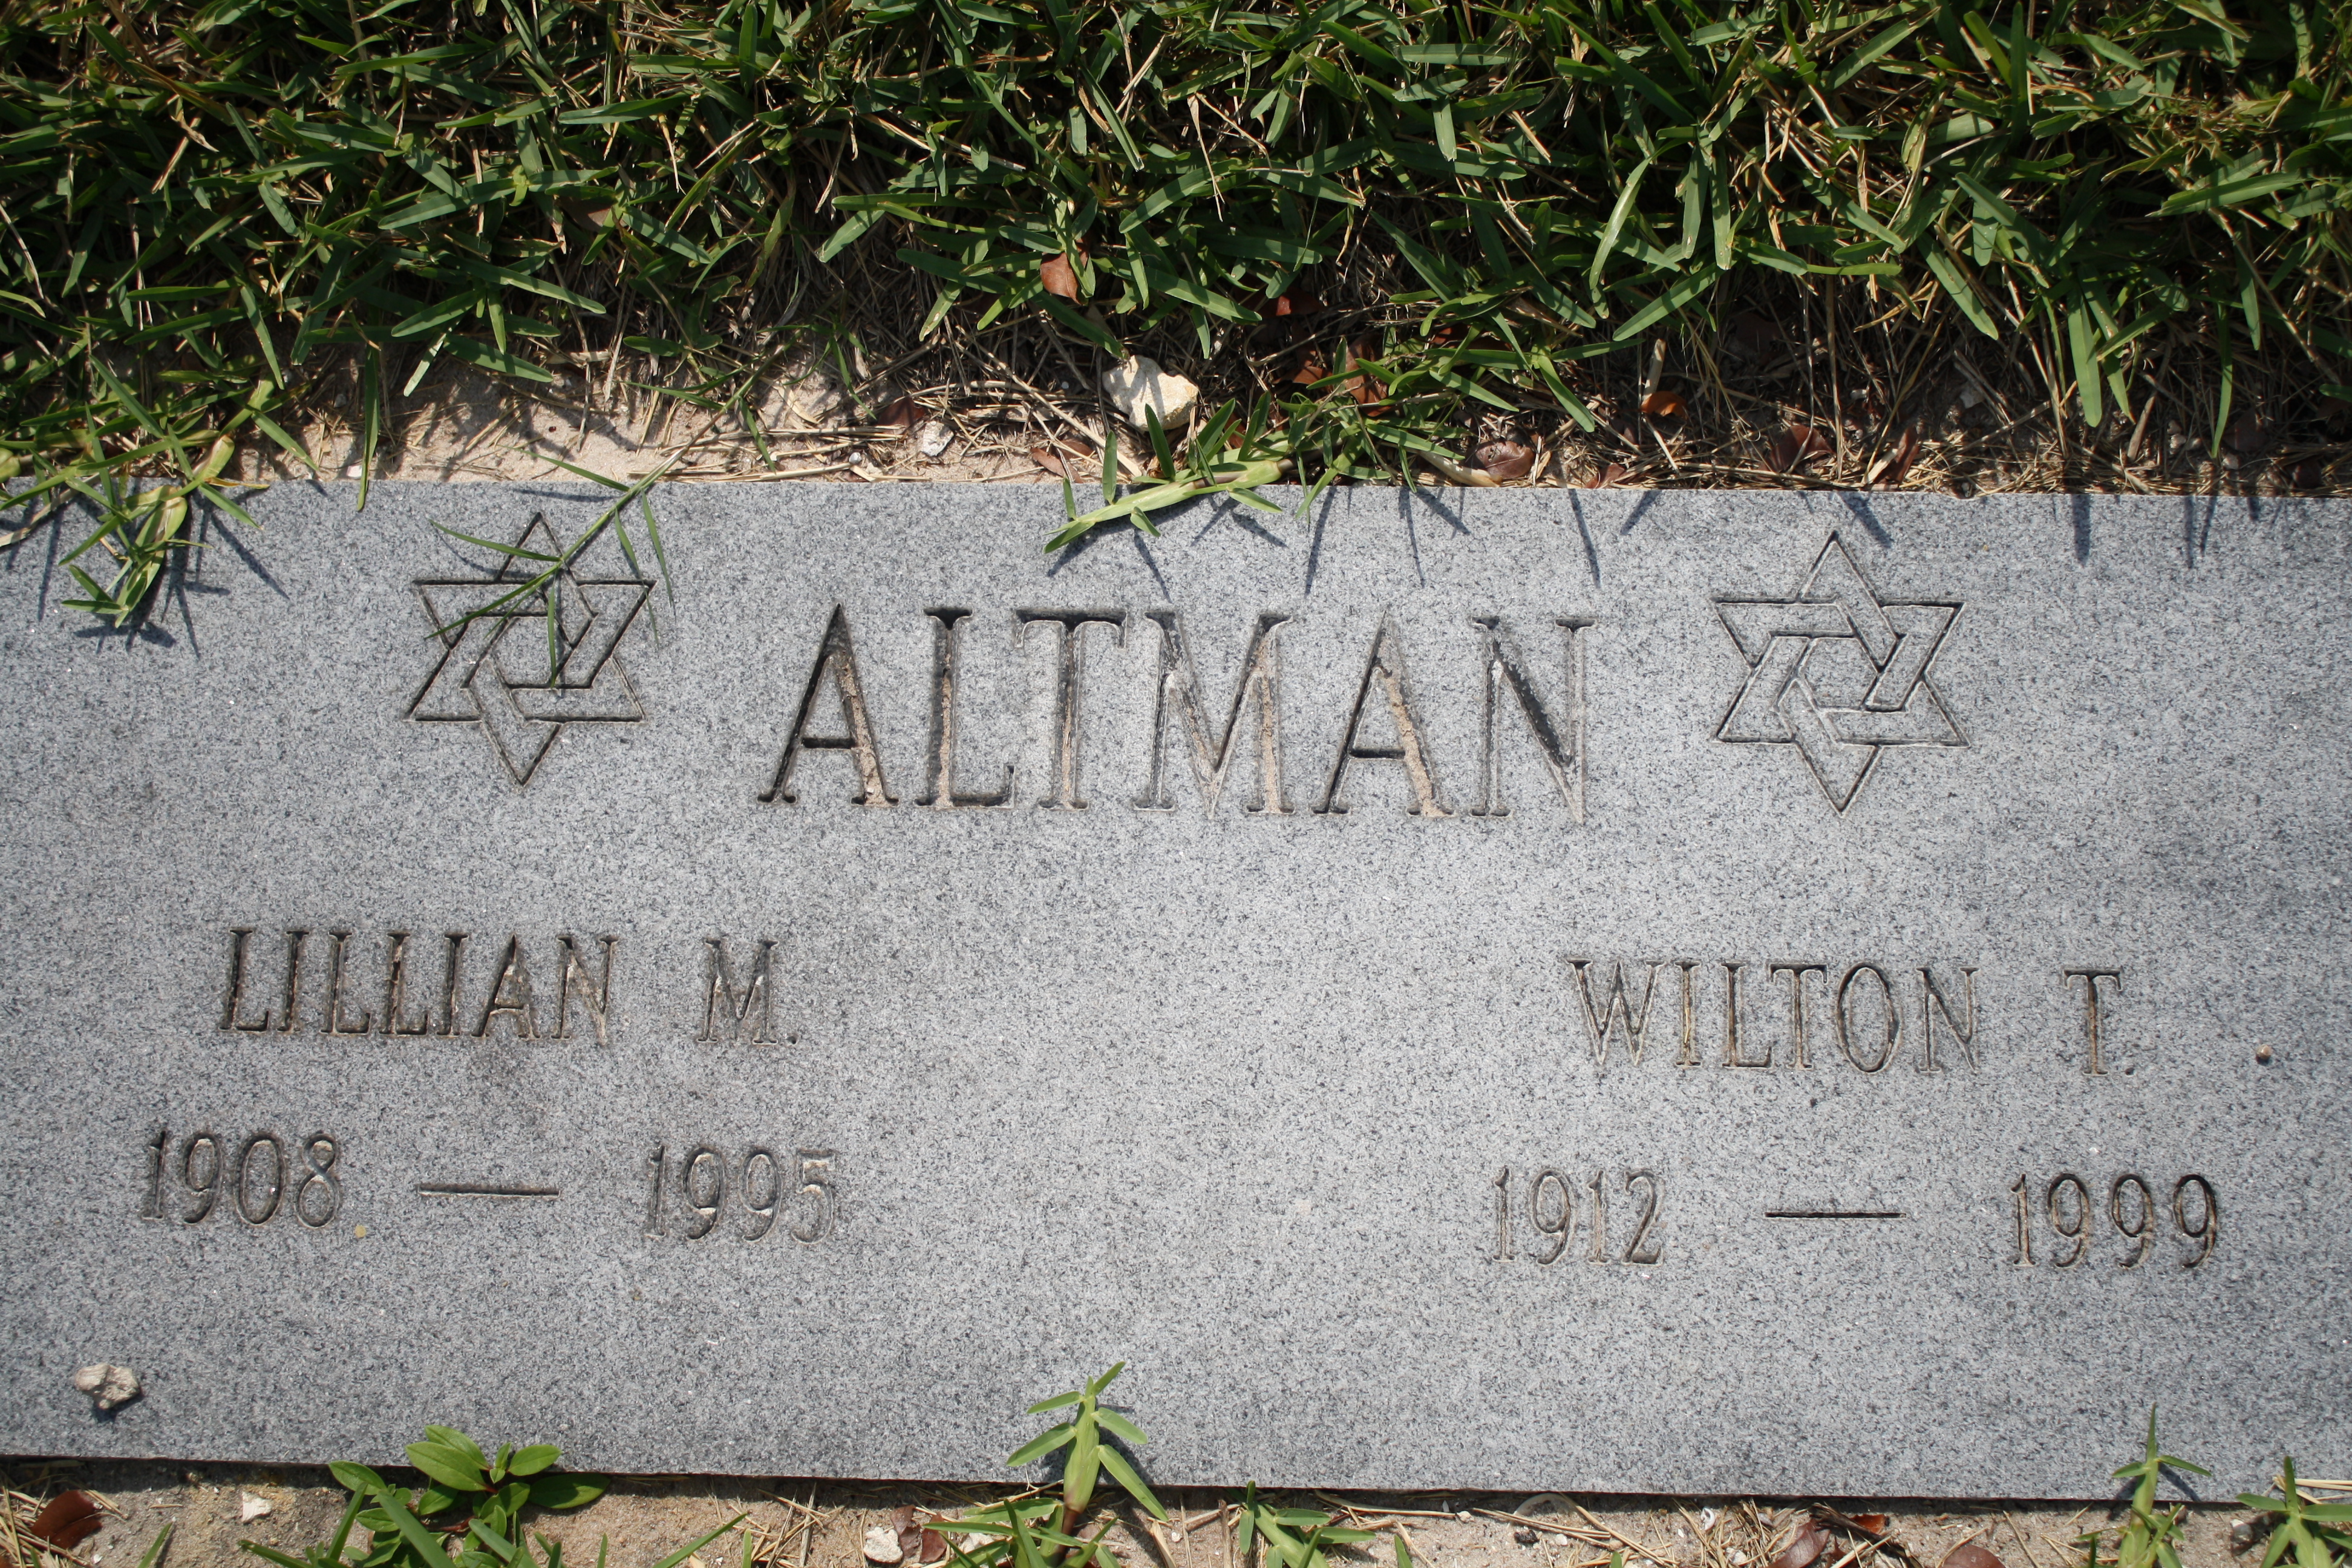 Lillian M Altman